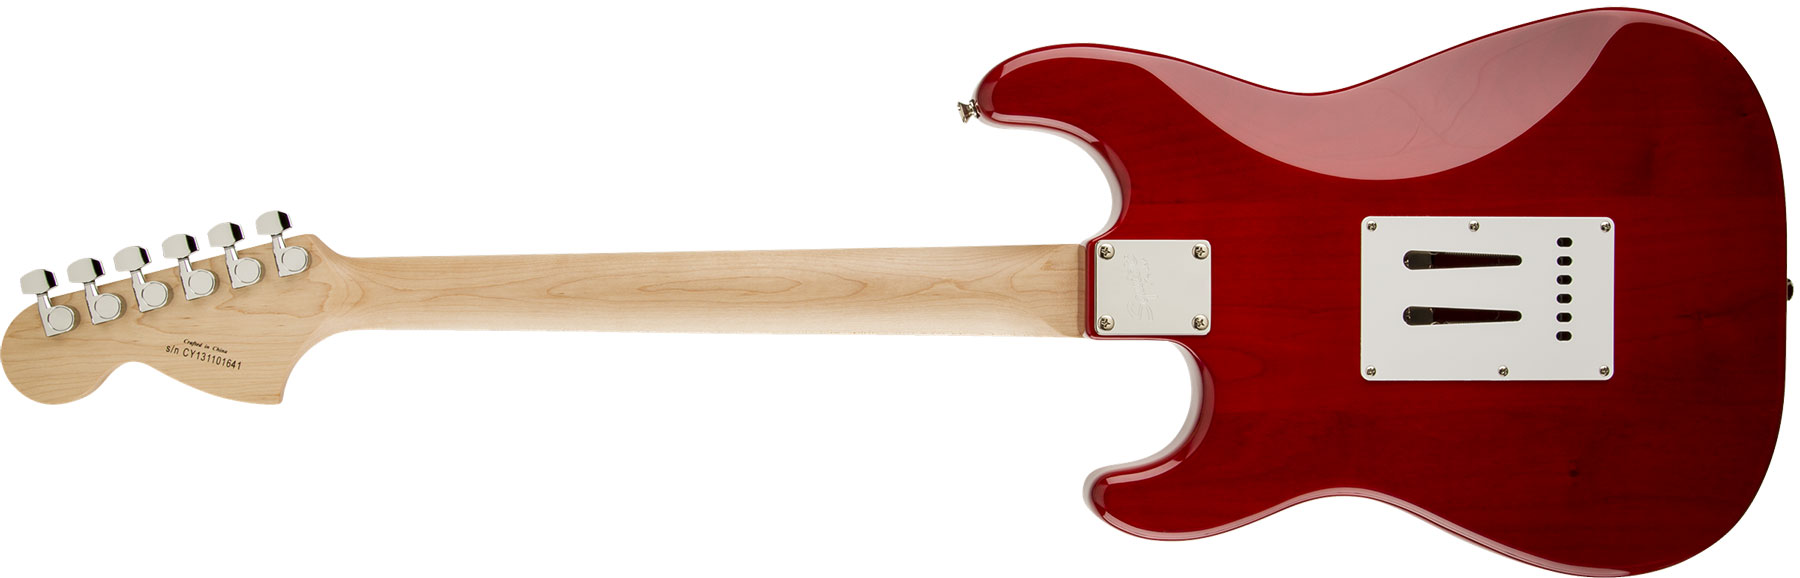 Squier Strat Standard Lau - Cherry Sunburst - Elektrische gitaar in Str-vorm - Variation 1